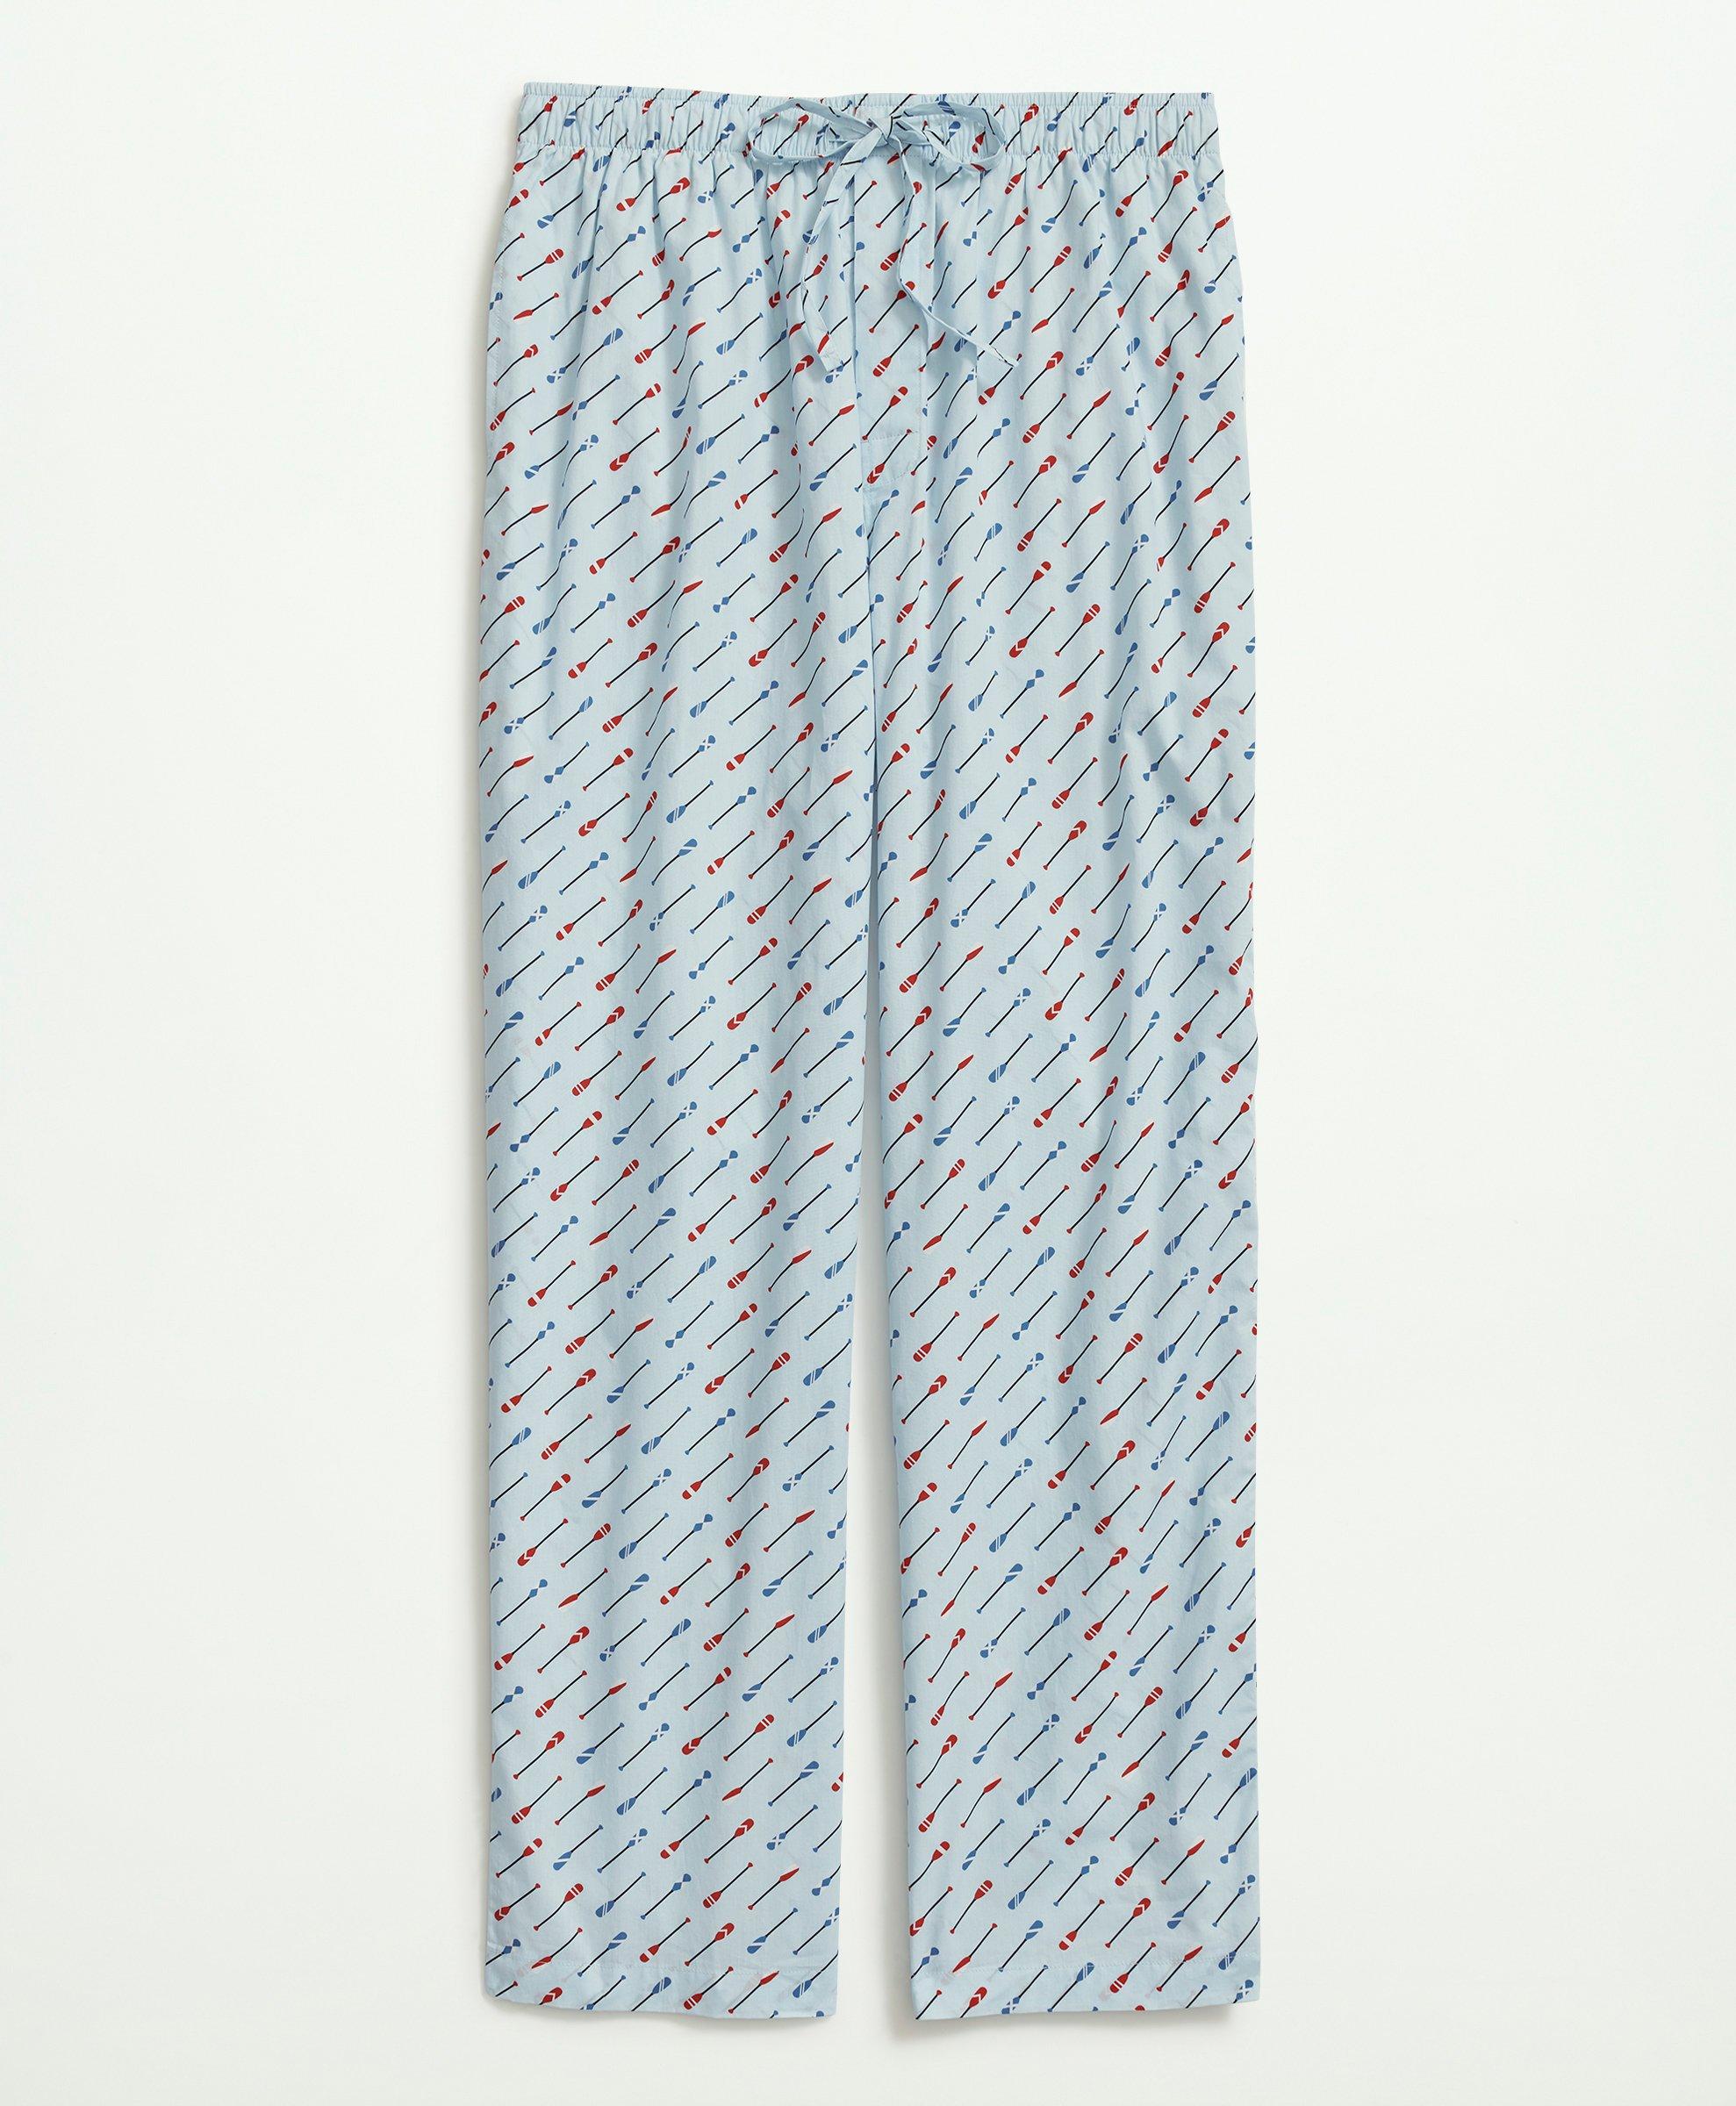 Poplin Pajama Pants